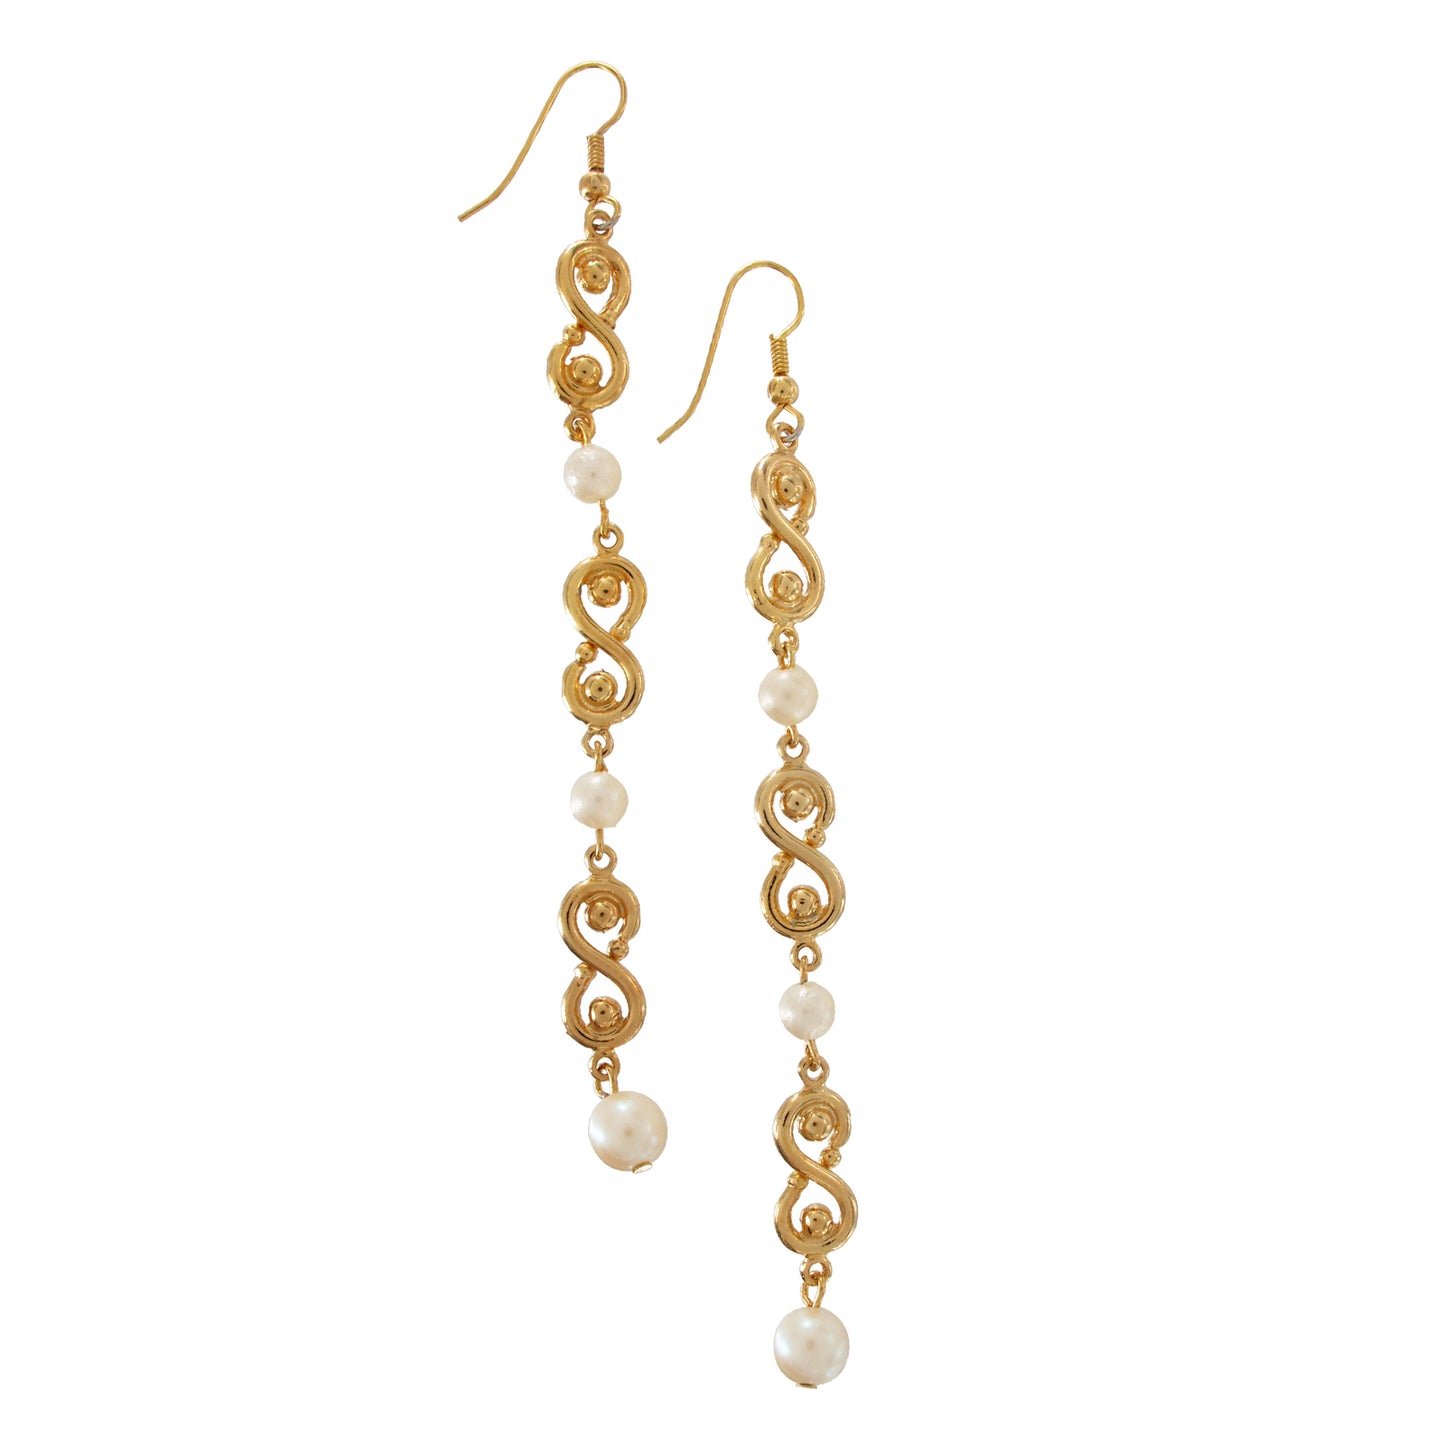 Long Gold Tone Faux Pearl Infinity Dangle Drop Earrings Pierced 4 1/2"